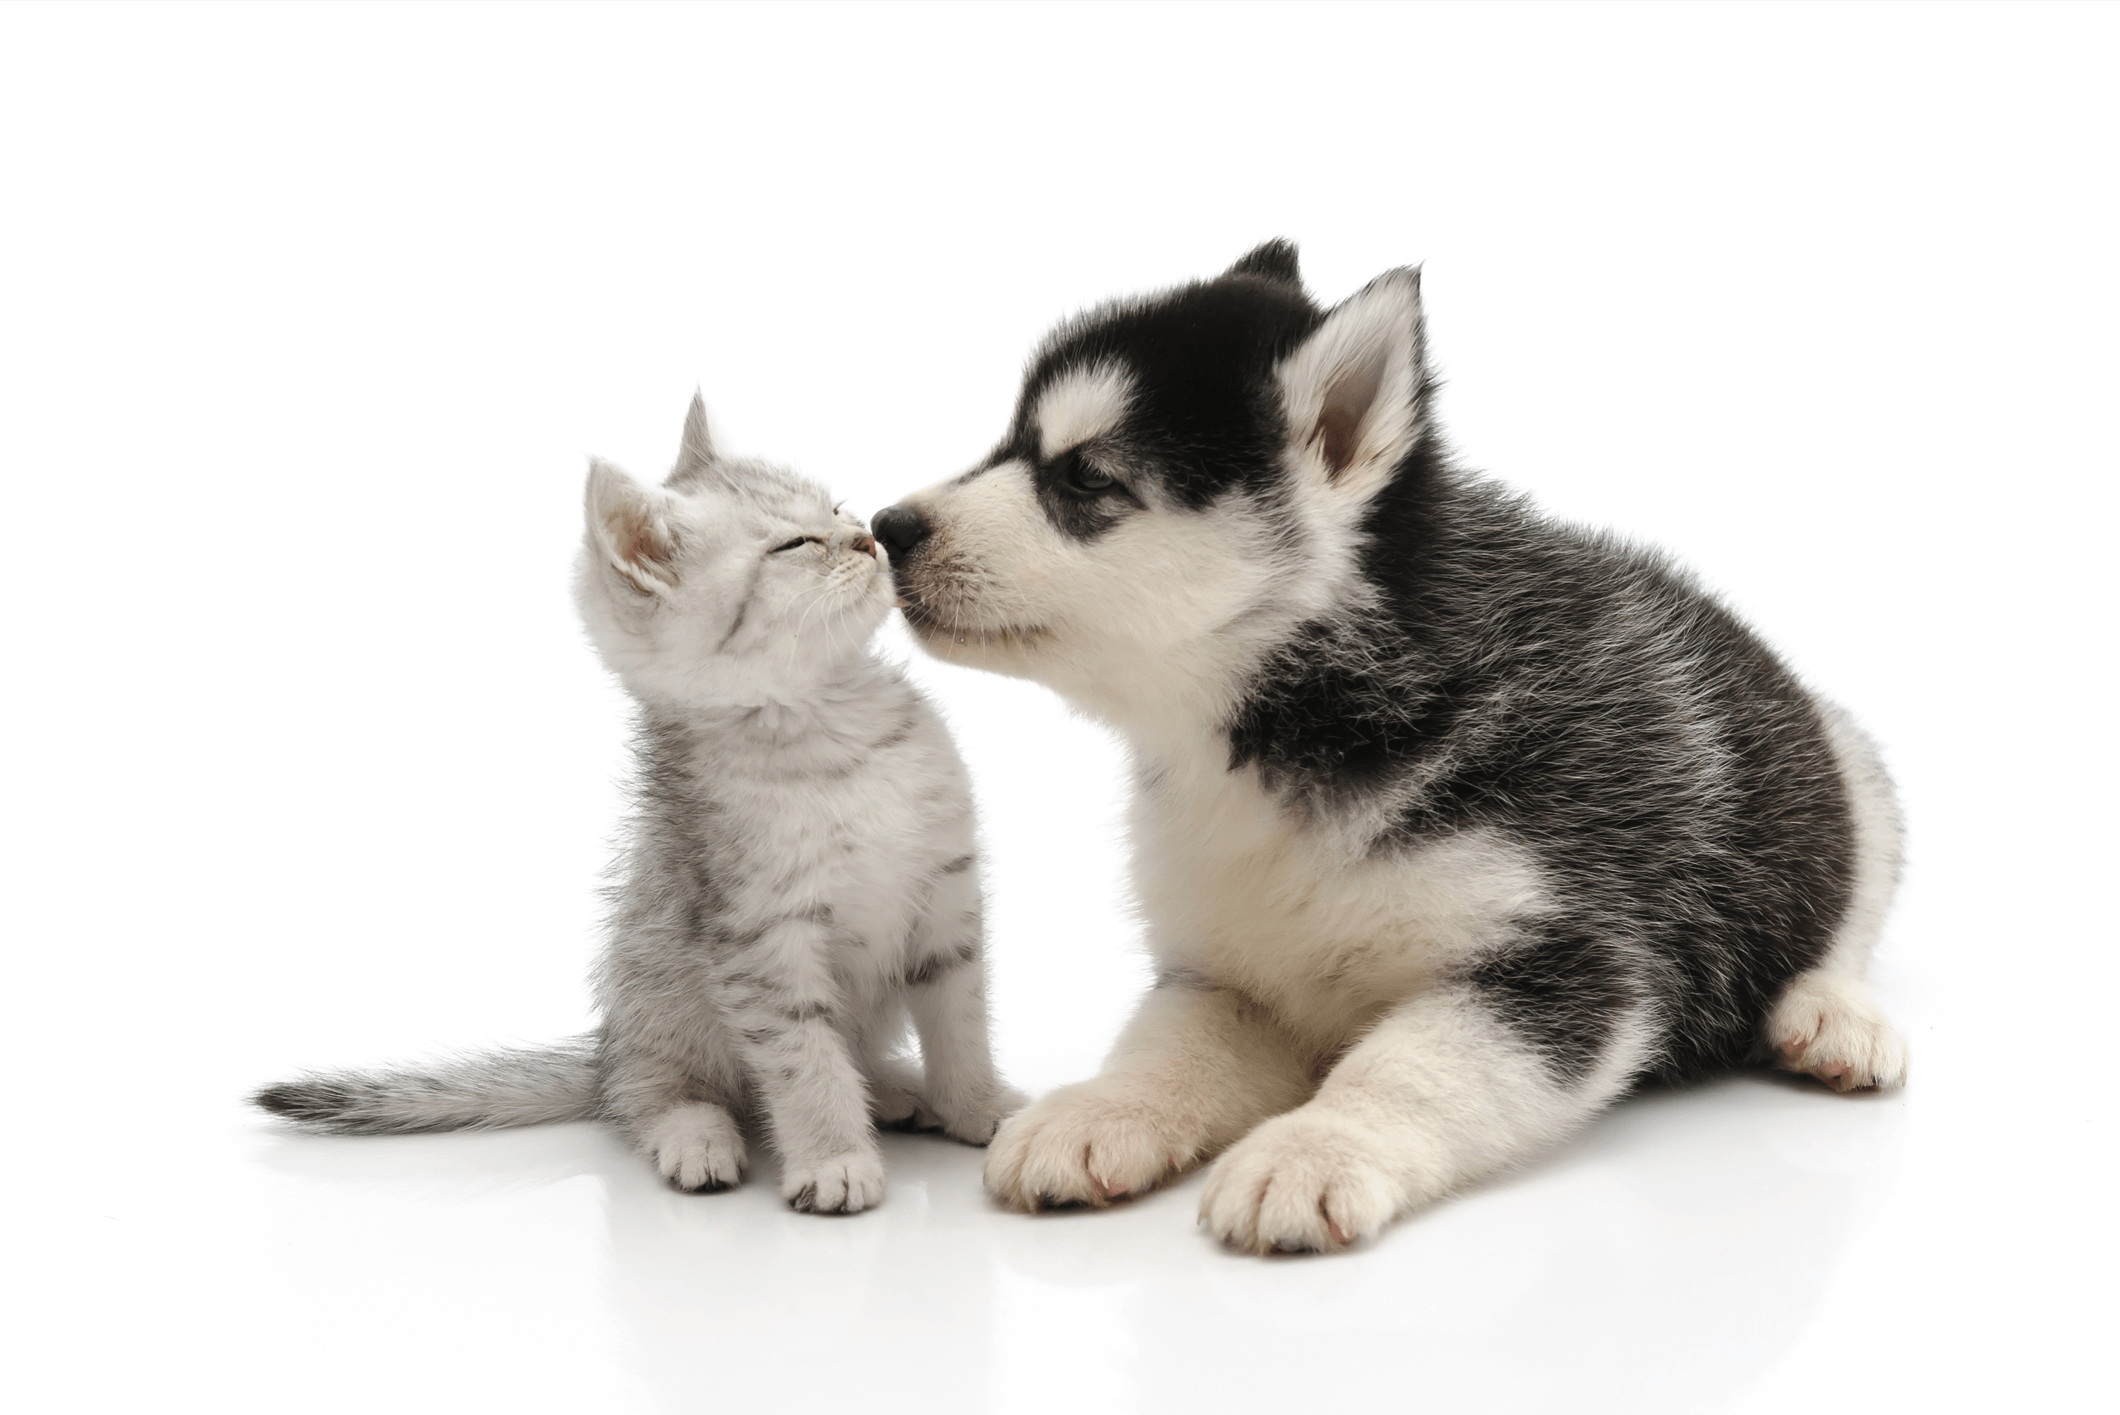 Puppy and Kitten Wellness